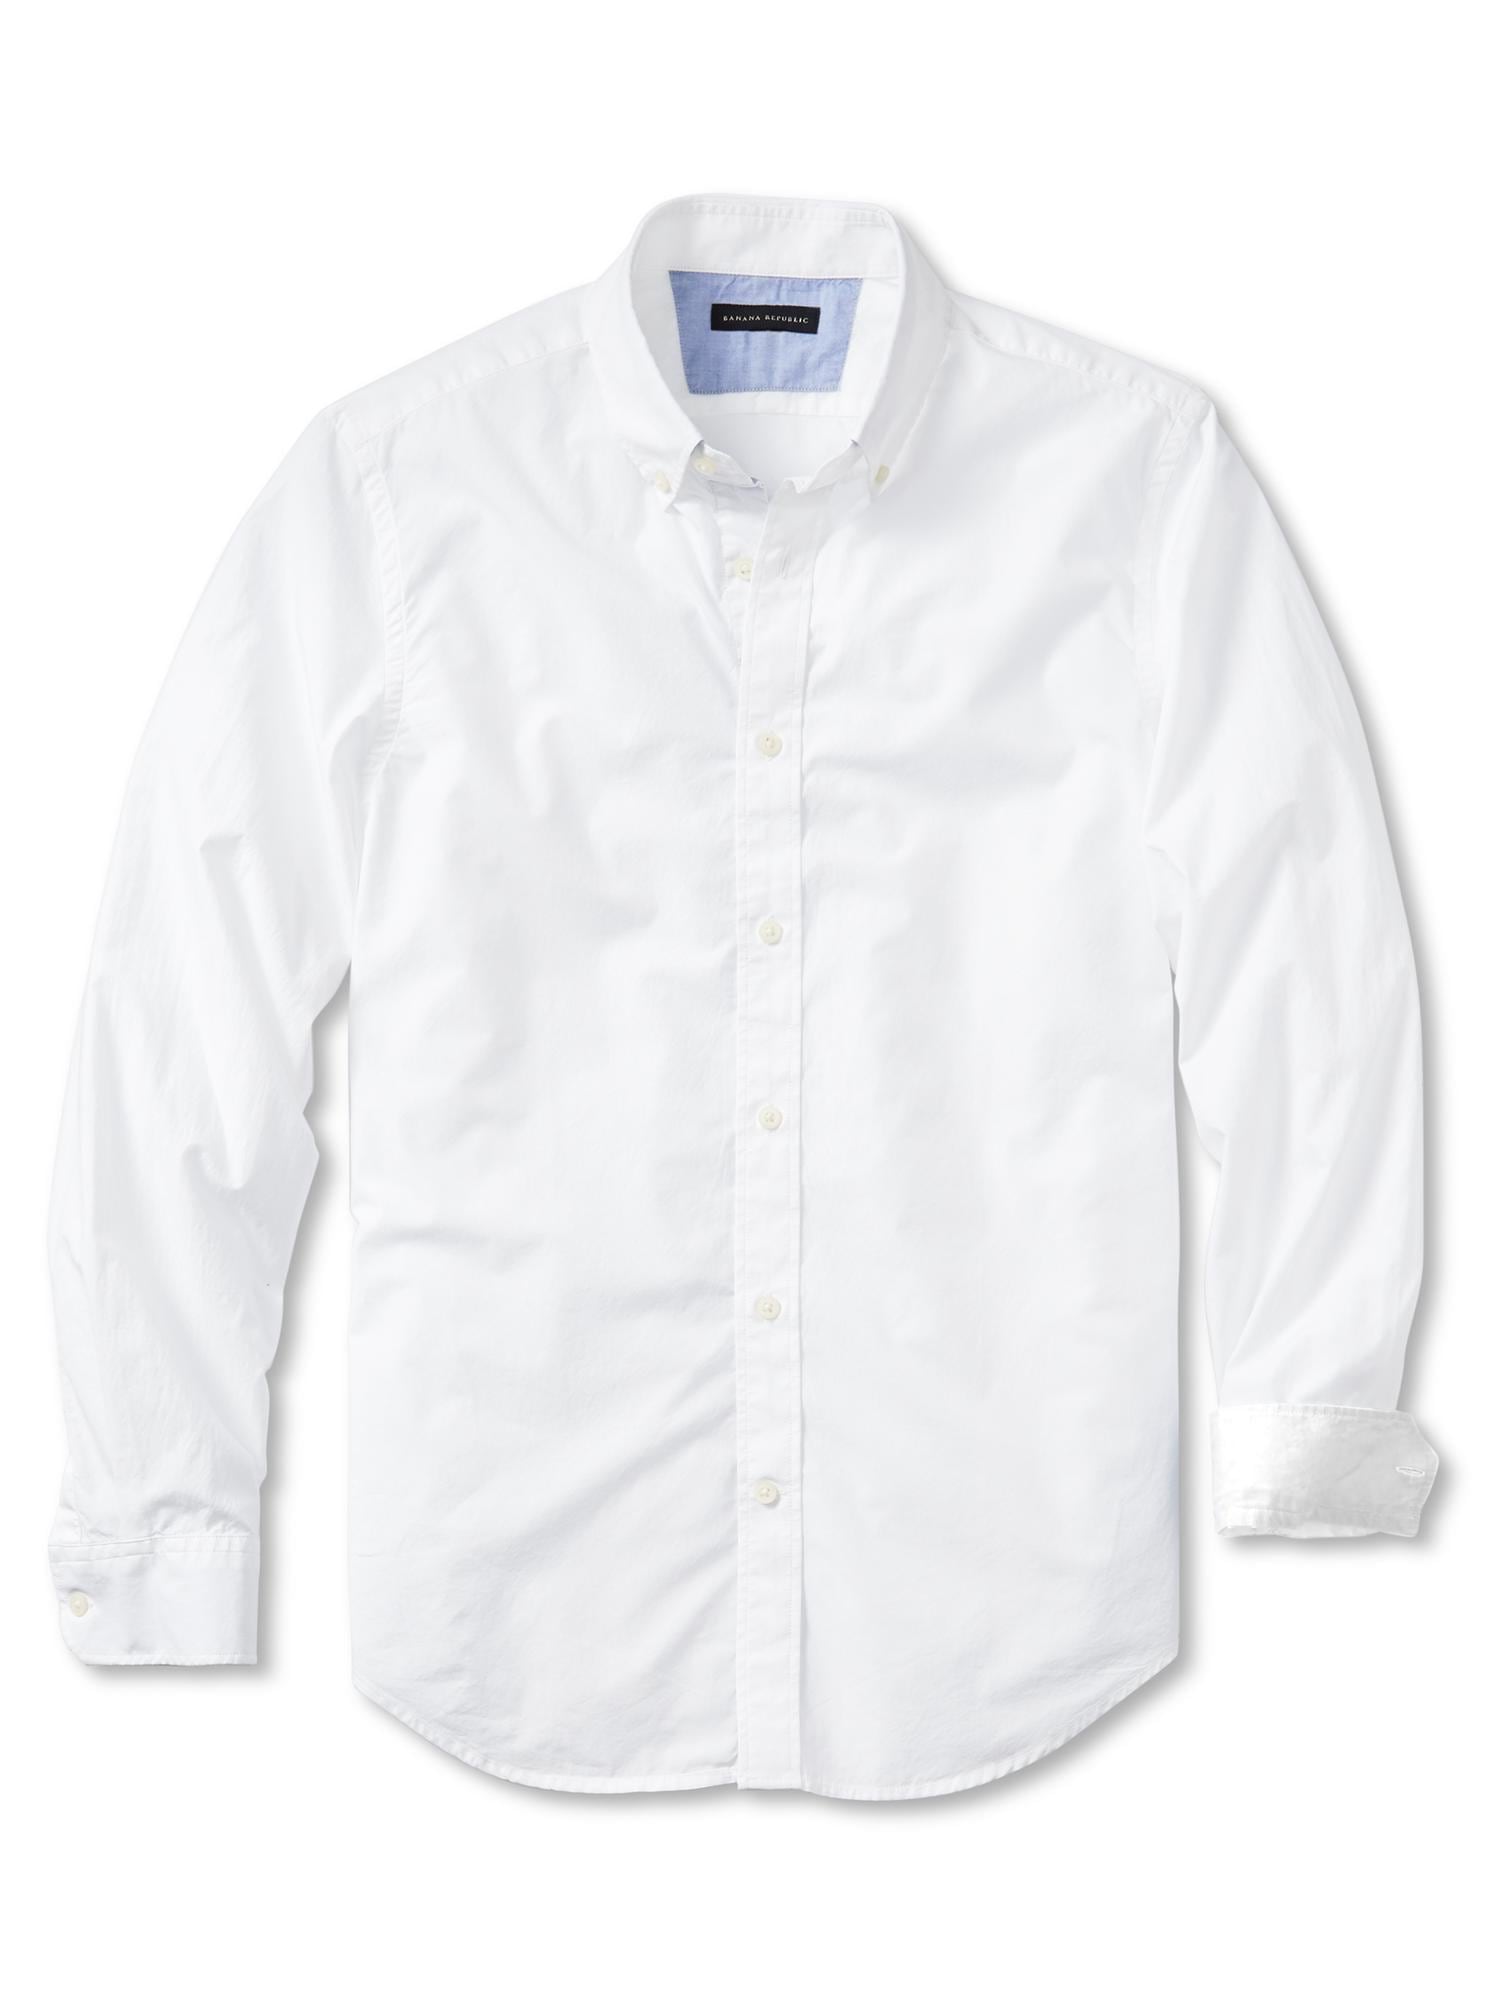 Textured Wash-N-Wear Shirt, Shirts